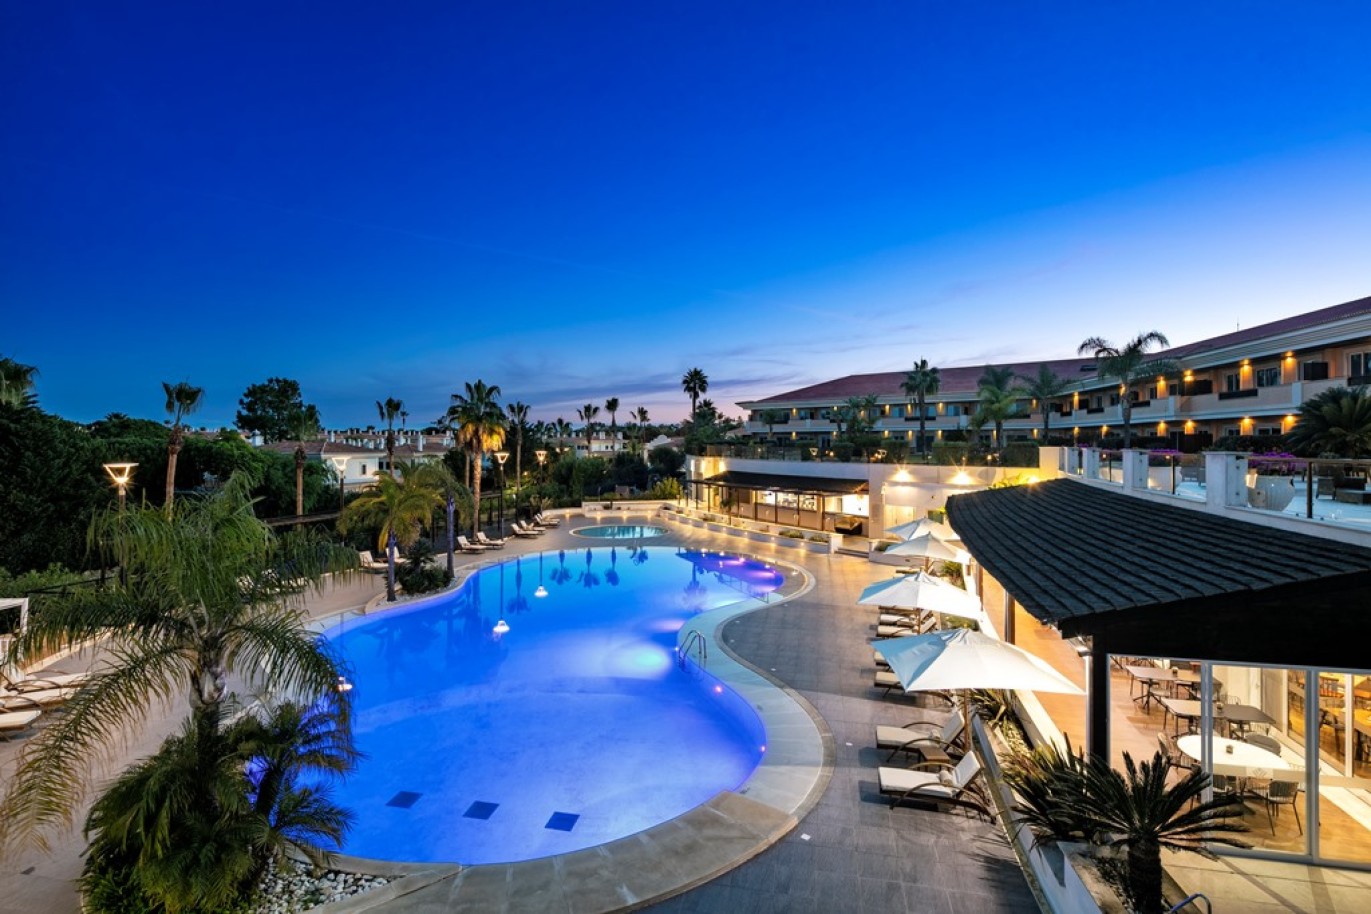 Apartamento, 2 quartos, piscina, para venda na Quinta do Lago, Algarve_263361